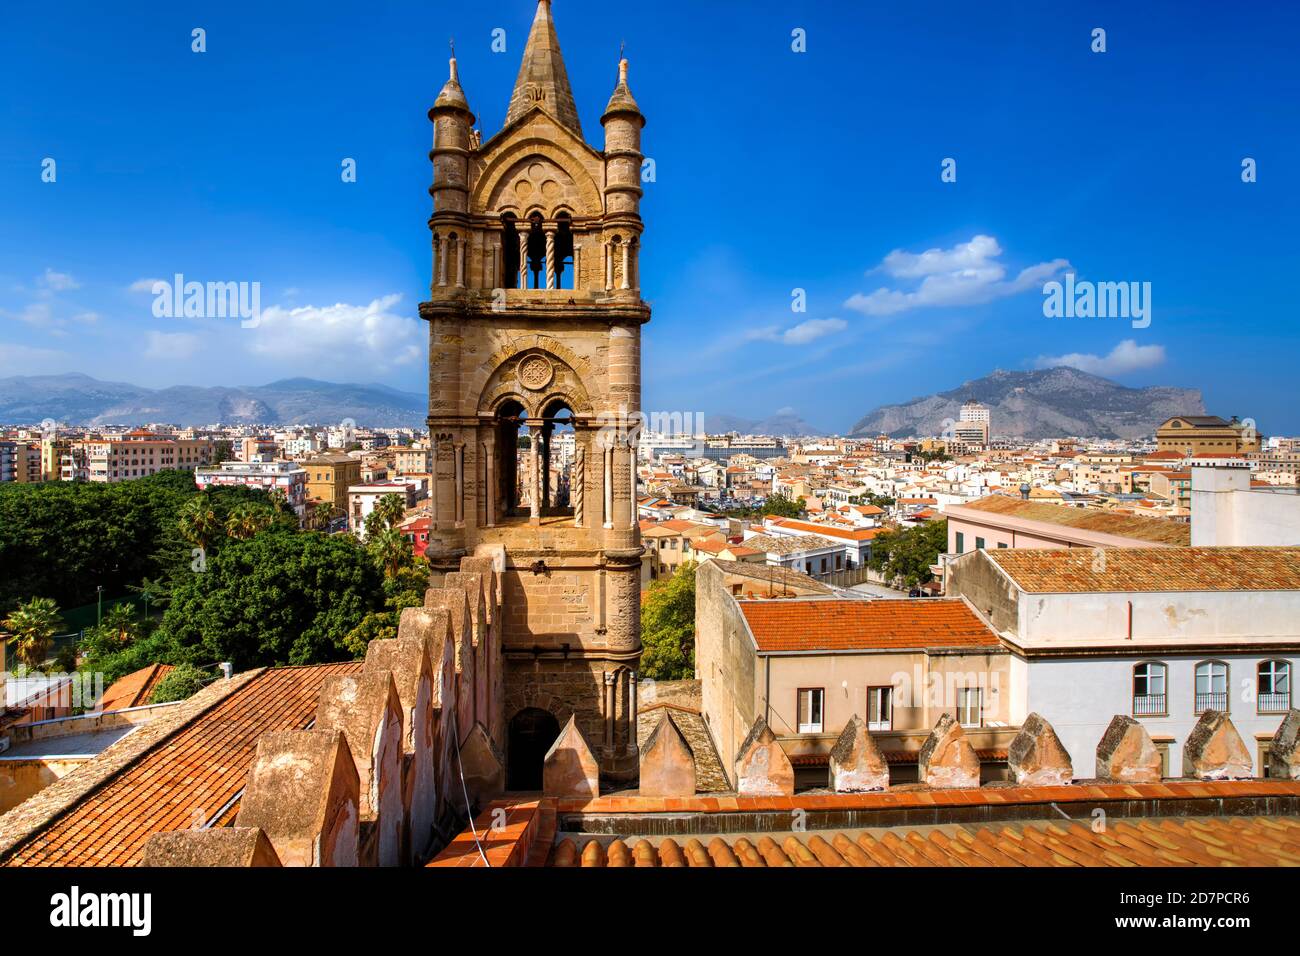 Der Glockenturm der Kathedrale von Palermo. Palermo, Sizilien, Italien Stockfoto